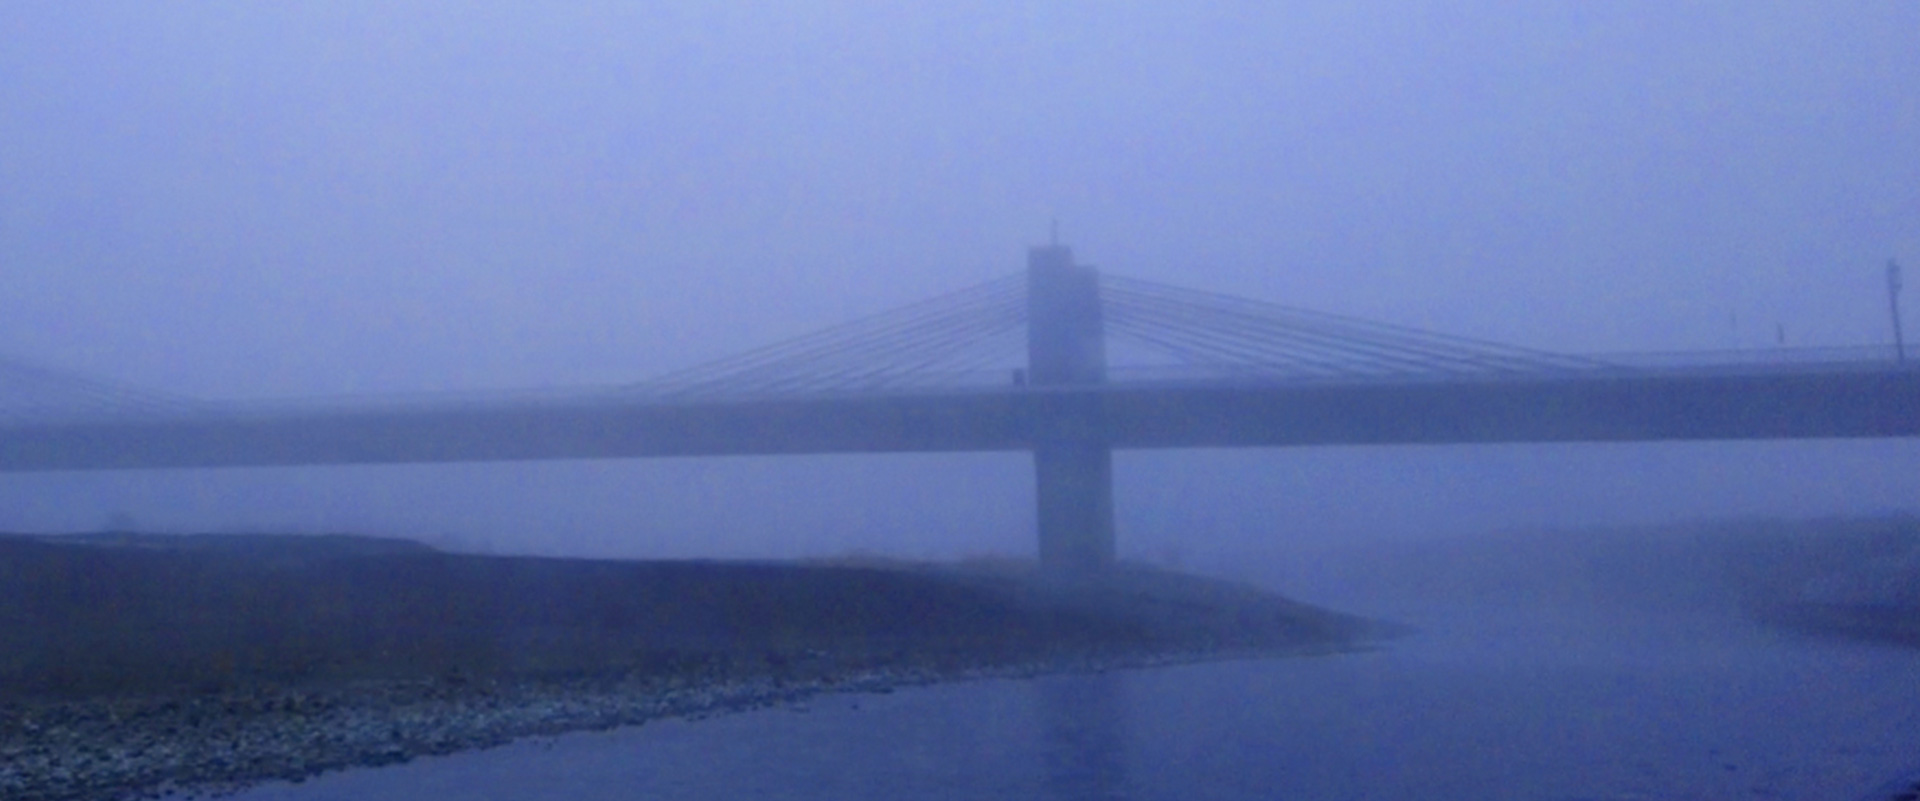 霧の保津橋の写真